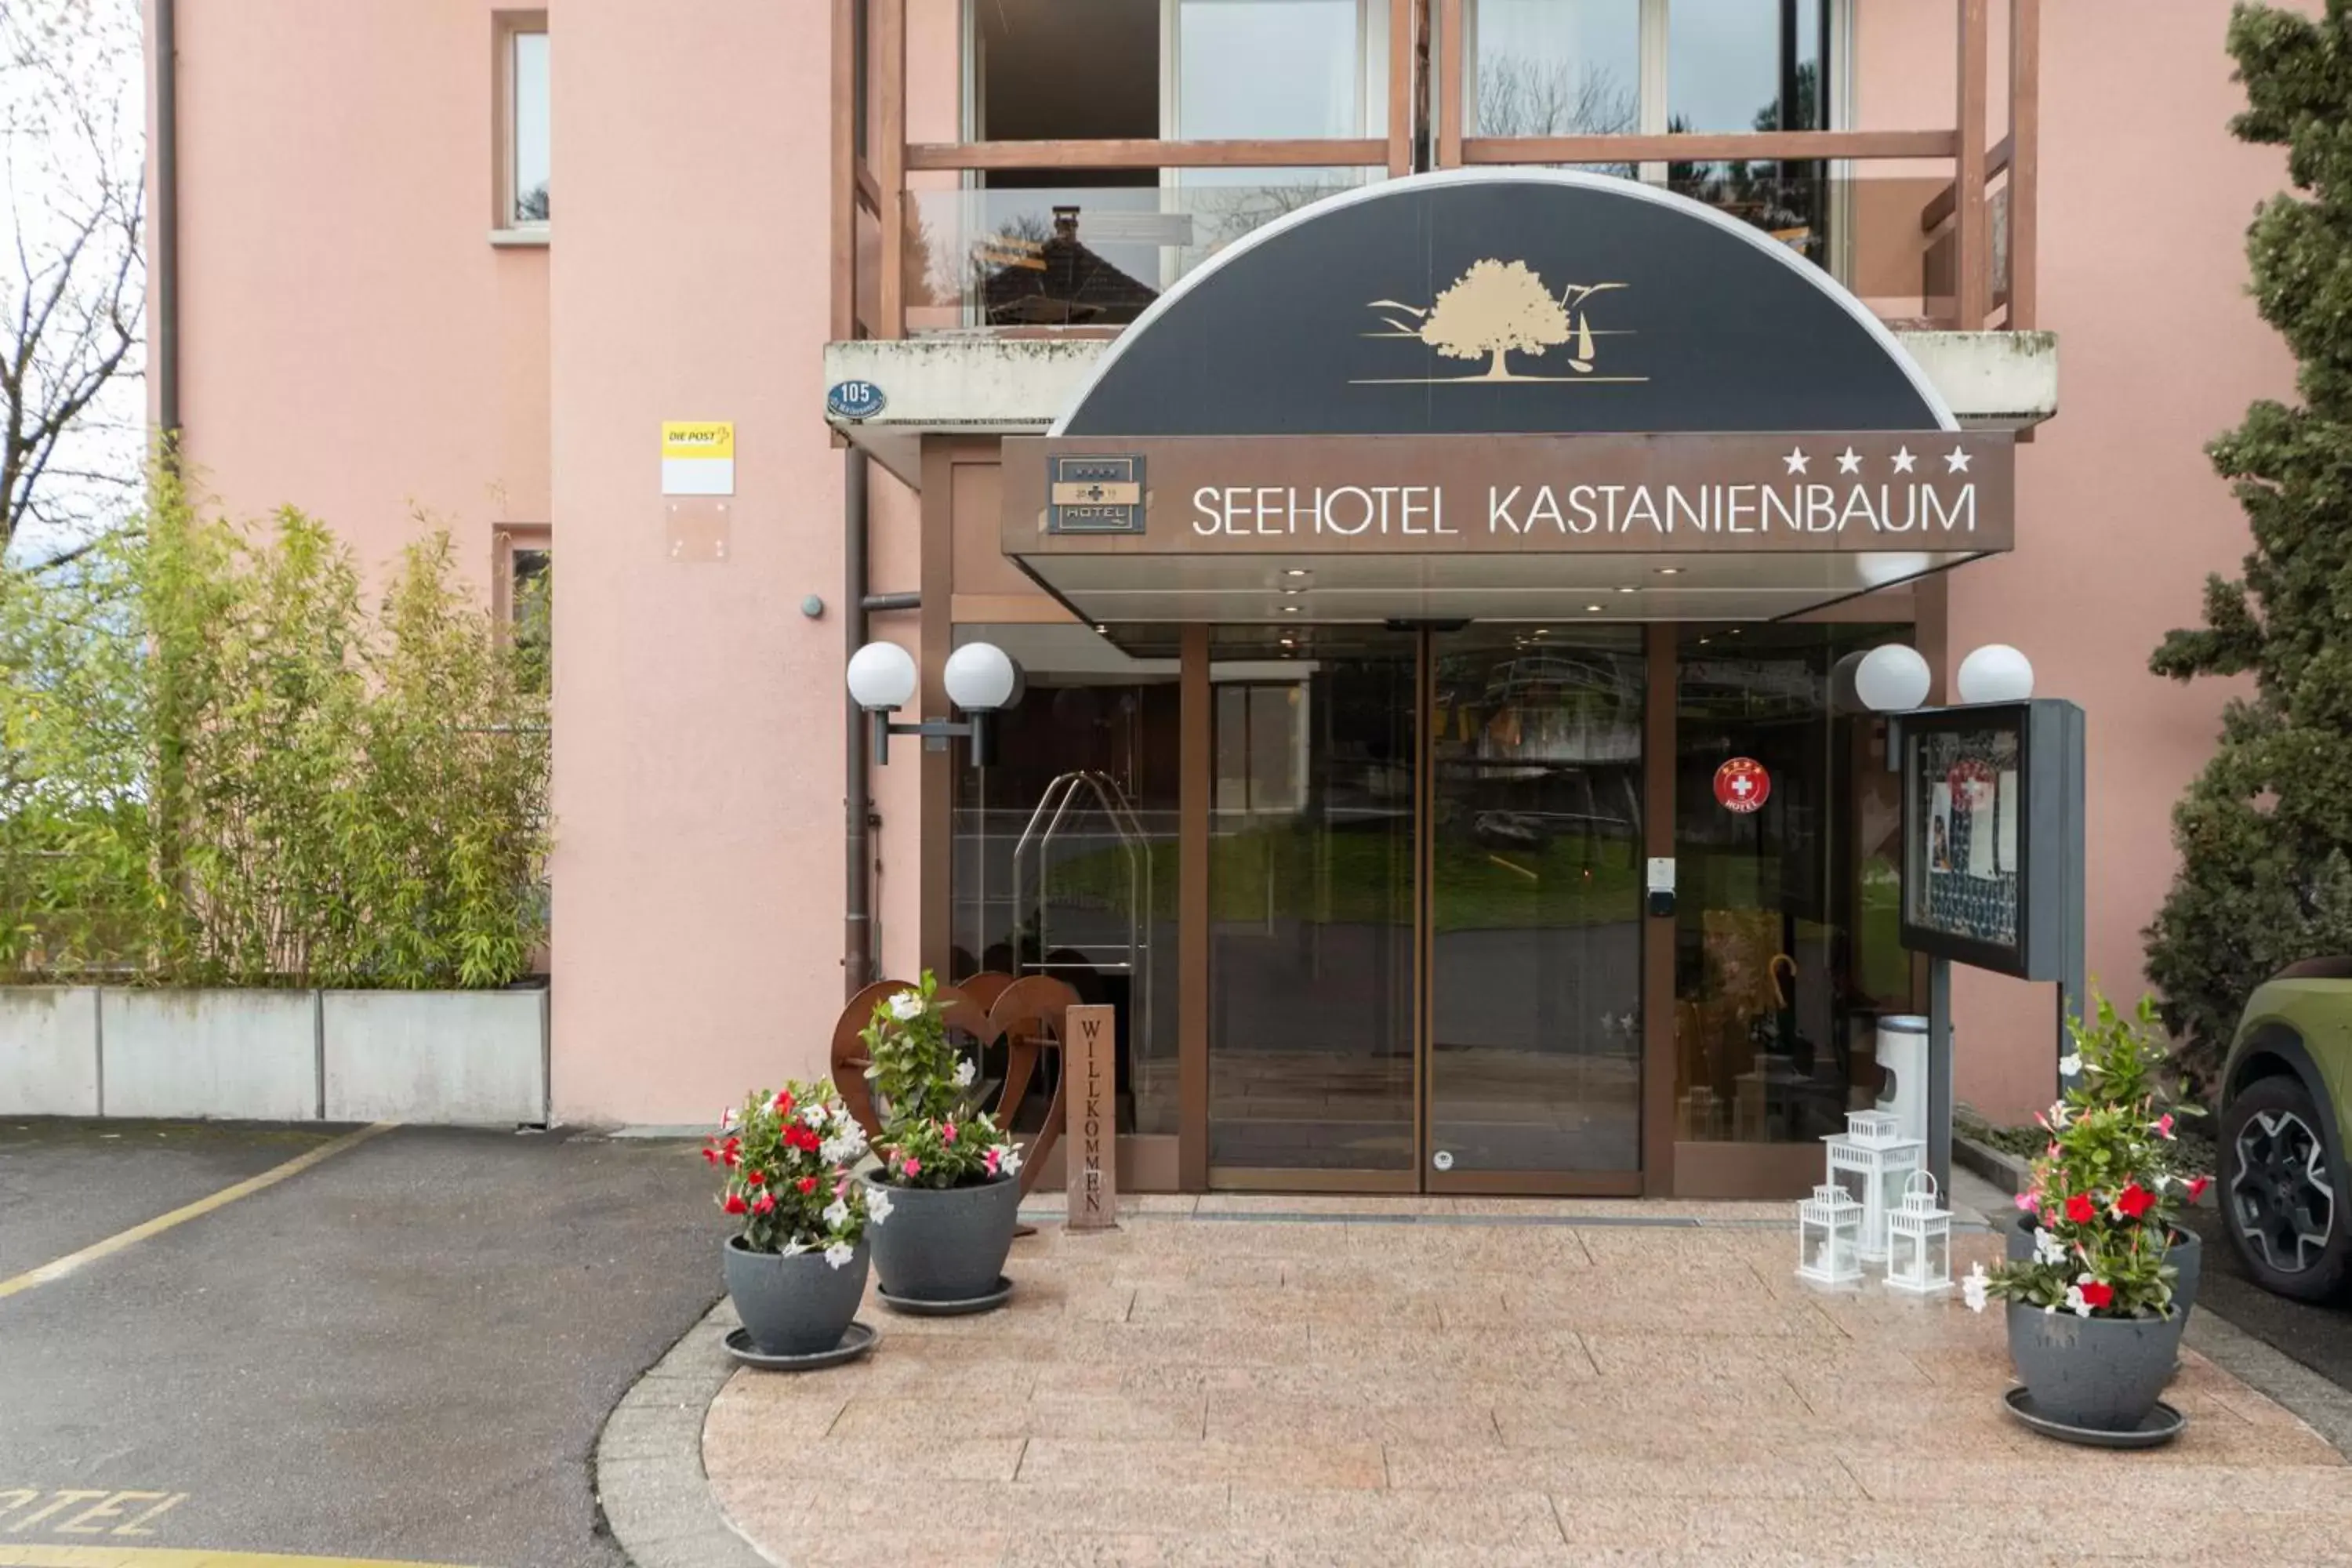 Facade/entrance in Seehotel Kastanienbaum